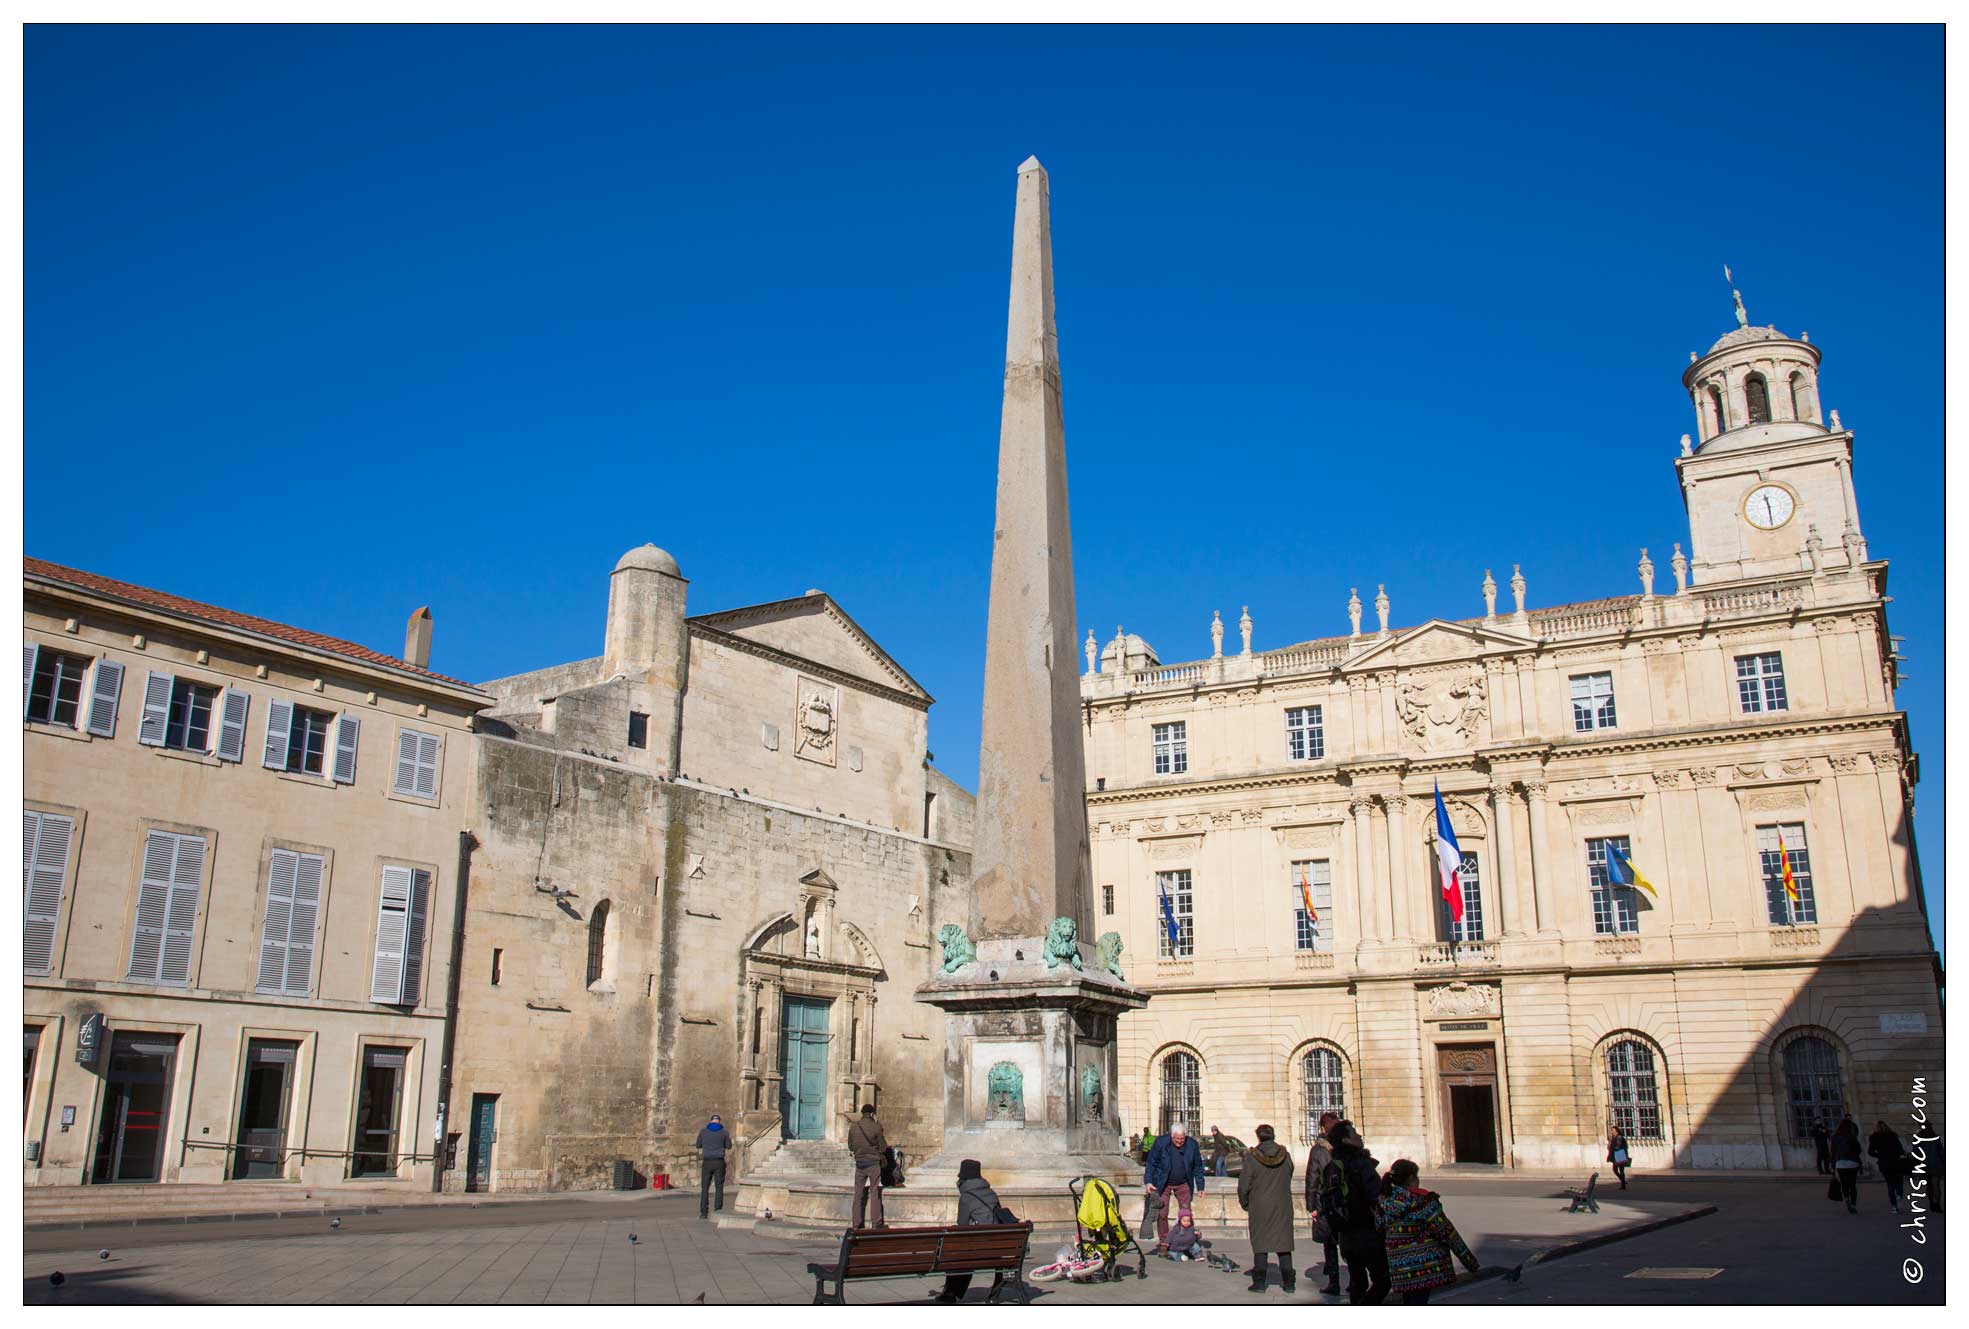 20160121-45_6502-Arles_Place_de_la_republique_Obelisque.jpg